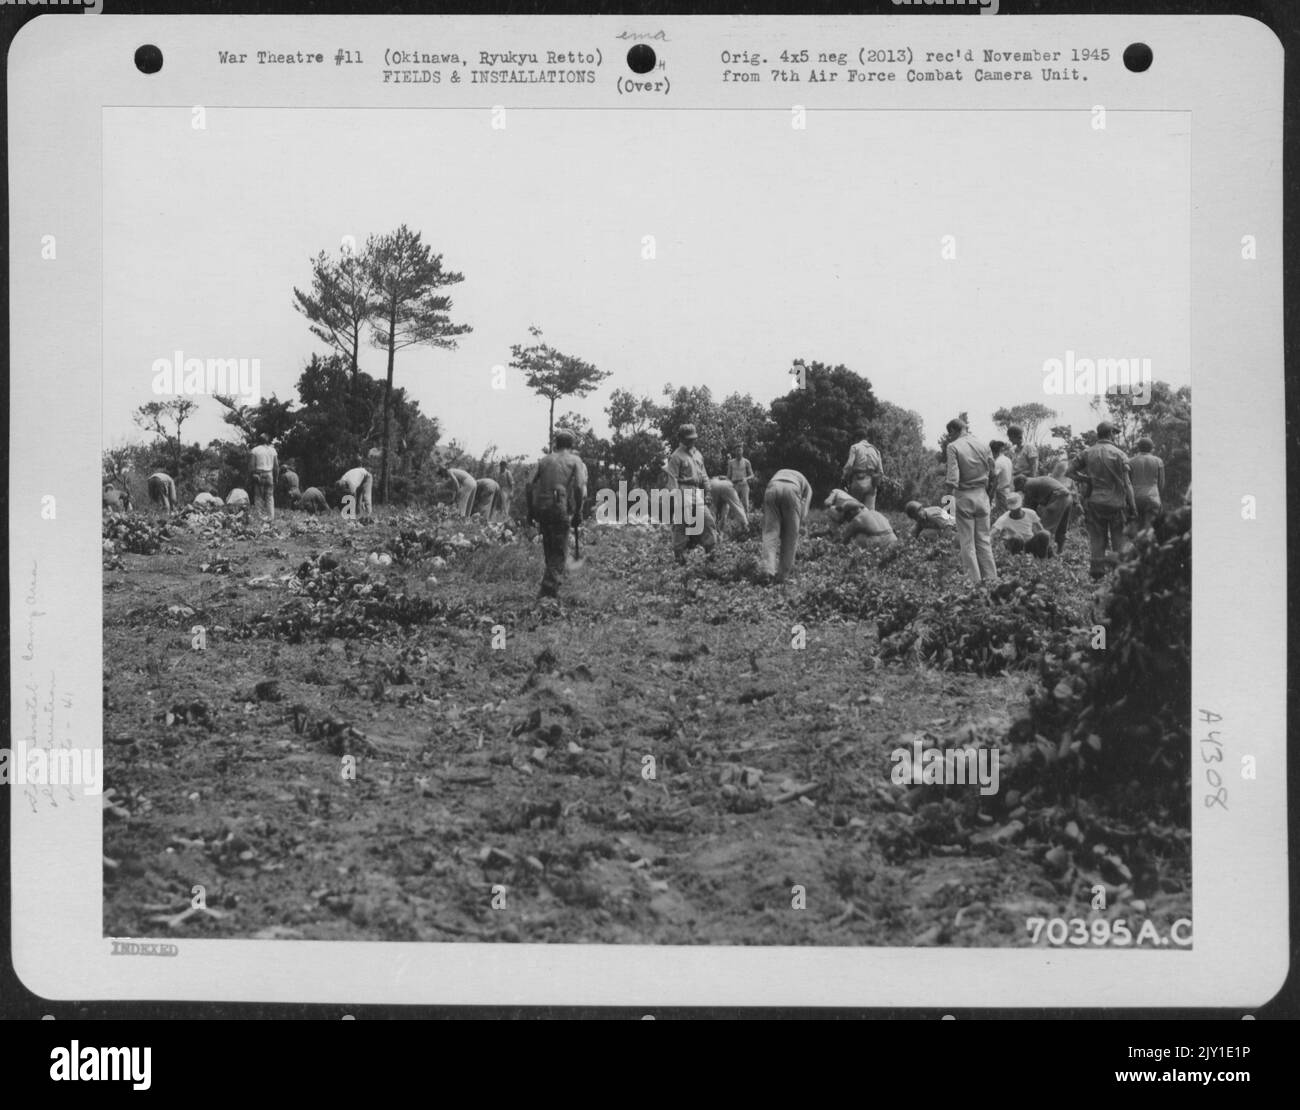 Bevor Ryukyu Retto, Männer der 41. Bombengruppe, ihre Zelte im temporären Lagerbereich in der Nähe des Kadena-Flugstreifens auf Okinawa aufstellten, fanden sie es notwendig, das Gebiet zu löschen. 7. Juni 1945. Stockfoto